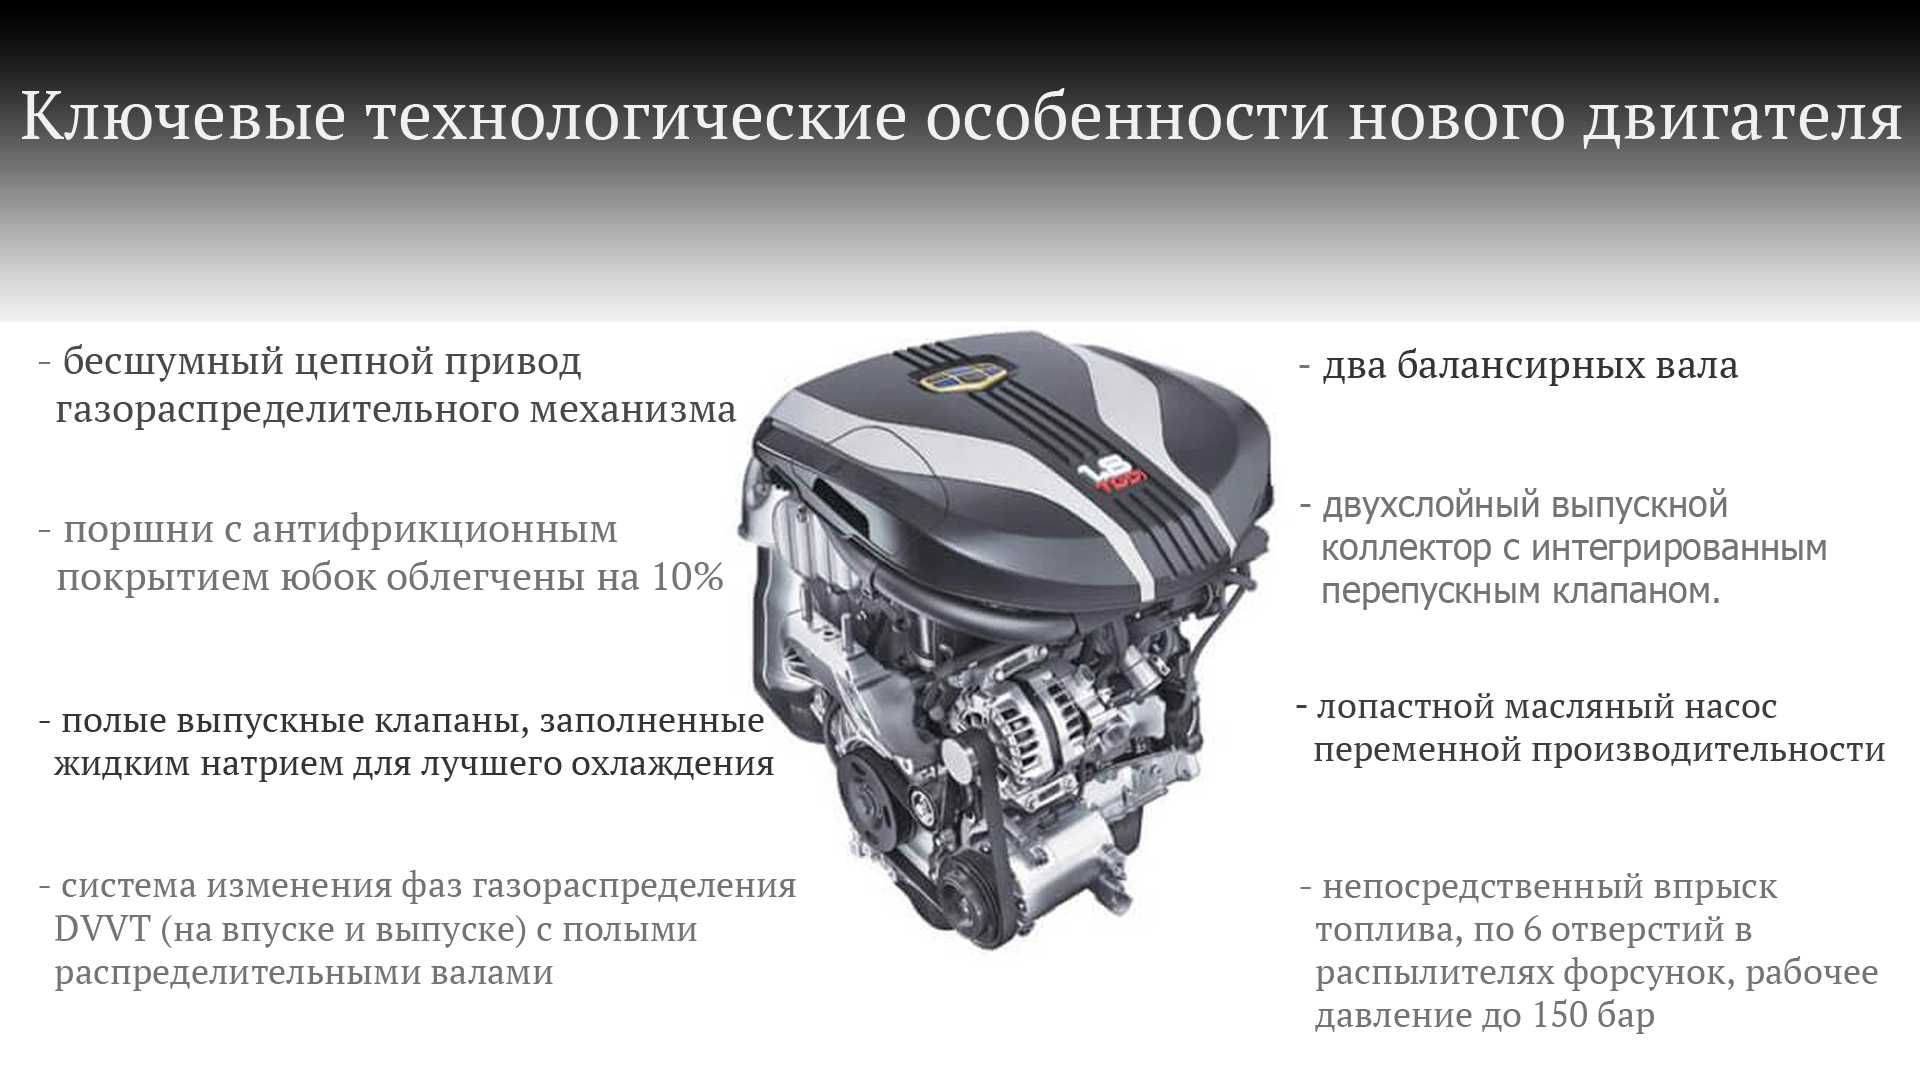 Характеристики современного двигателя Технические характеристики двигателя автомобиля характеристика двигателя основные параметры двигателя показатели двигателя